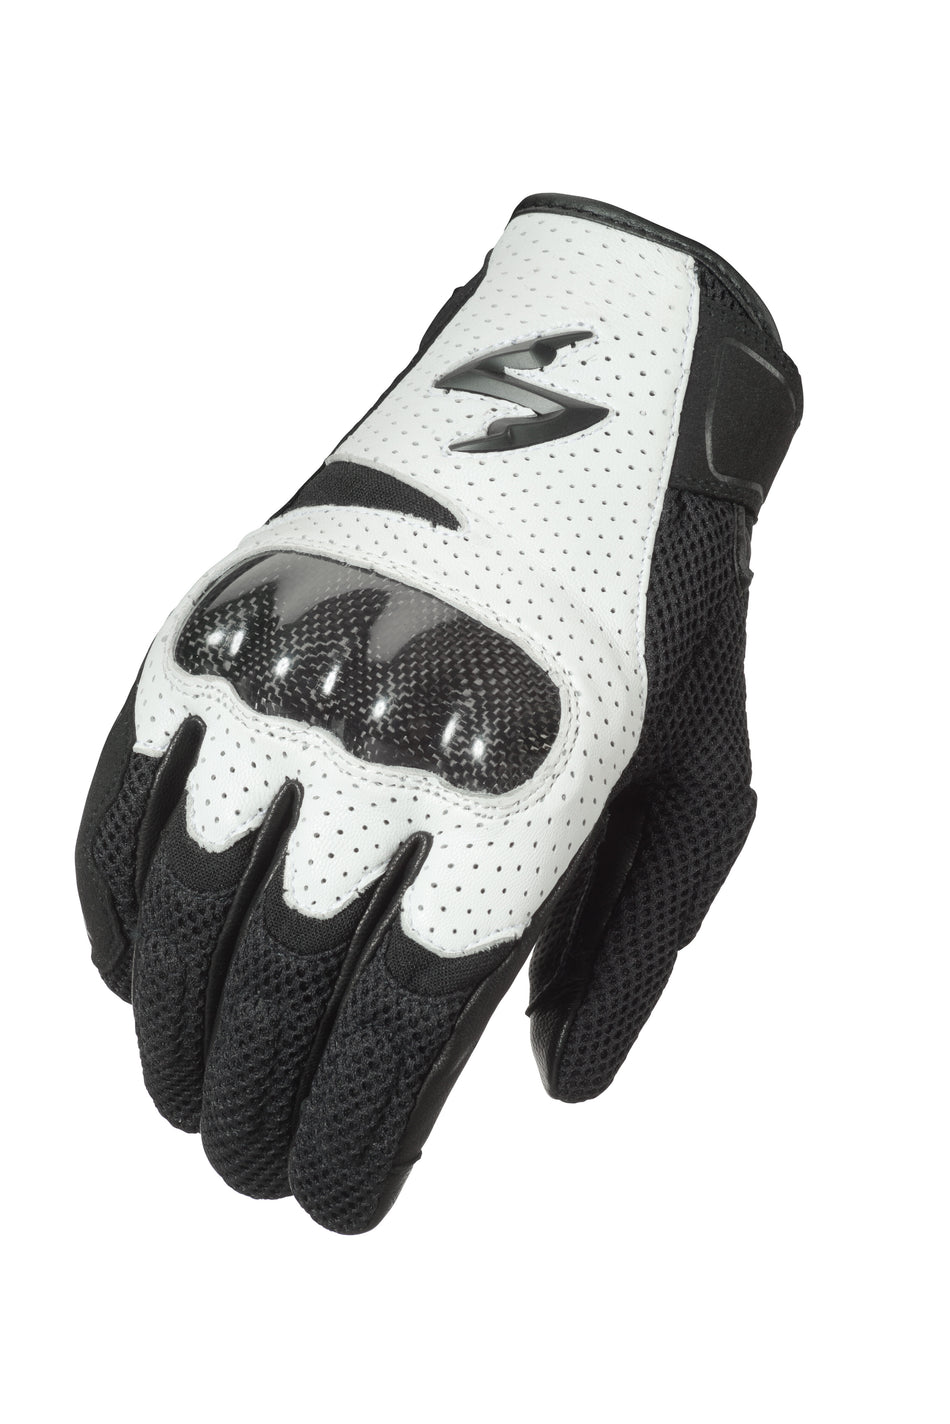 SCORPION EXO Vortex Air Gloves White 3x G36-058